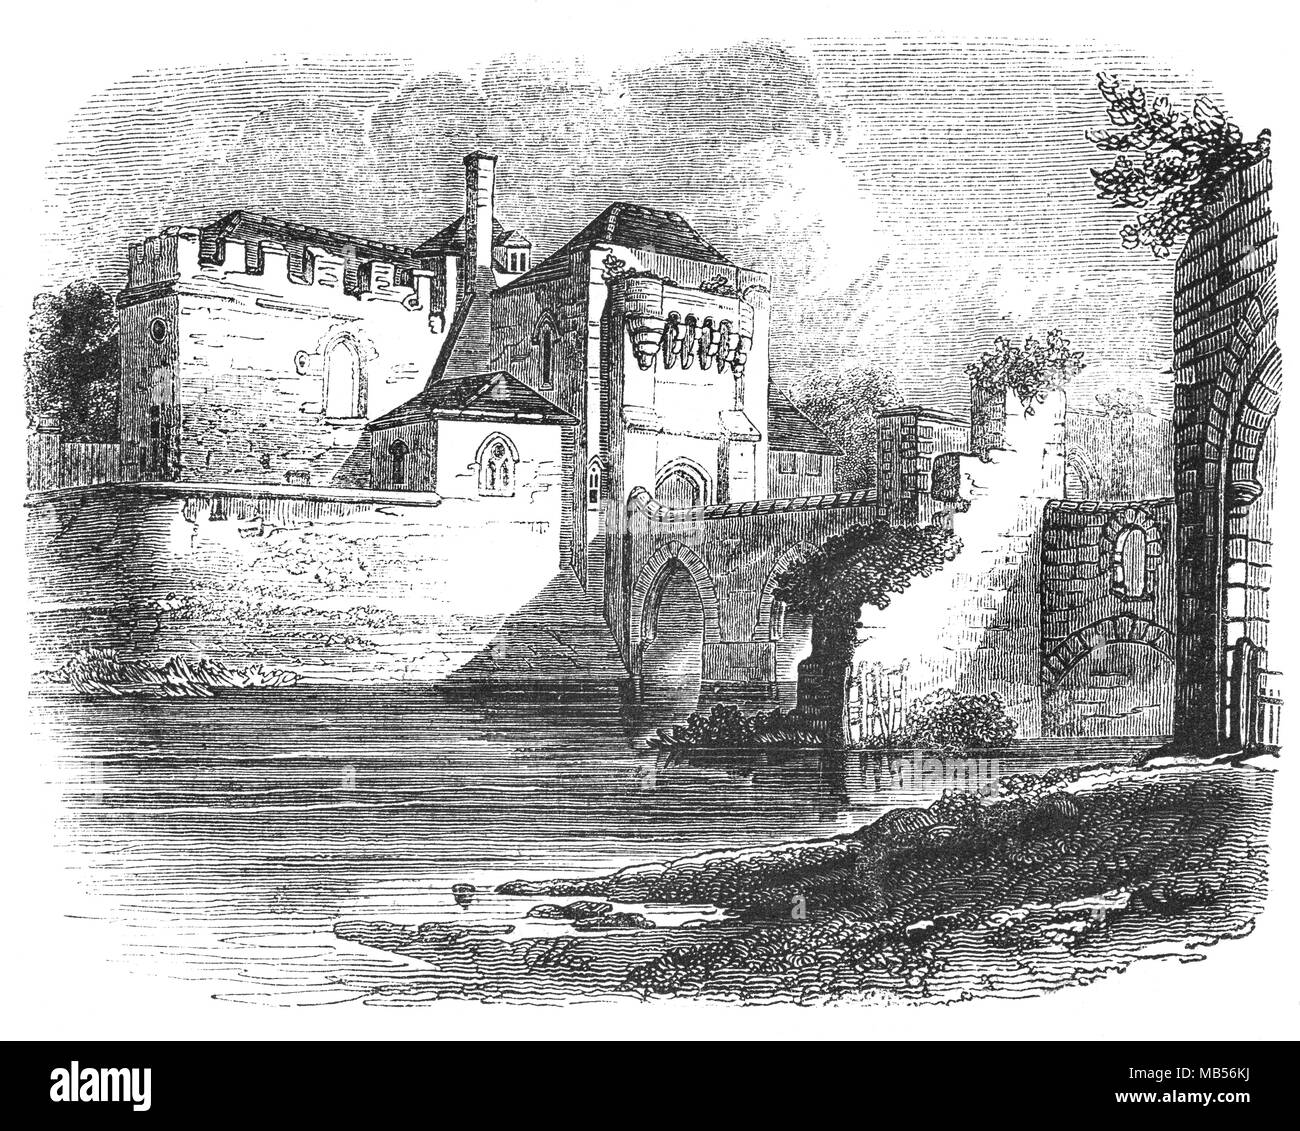 Un château a été sur le site de Château de Leeds, près de Maidstone dans le Kent, en Angleterre depuis 1086. En 1278, le château fut acheté par le roi Édouard I's Queen, Aliénor de Castille. Comme résidence d'Edward's, il a vu des investissements considérables. Le roi a amélioré ses défenses, et c'était probablement Edward qui a créé le lac qui entoure le château. Le Barbican (ou gardien) s'étend sur trois îles a été également construit. Le château aujourd'hui date principalement du 19e siècle et est construit sur des îles dans un lac formé par la rivière Len à l'est du village de Leeds Banque D'Images